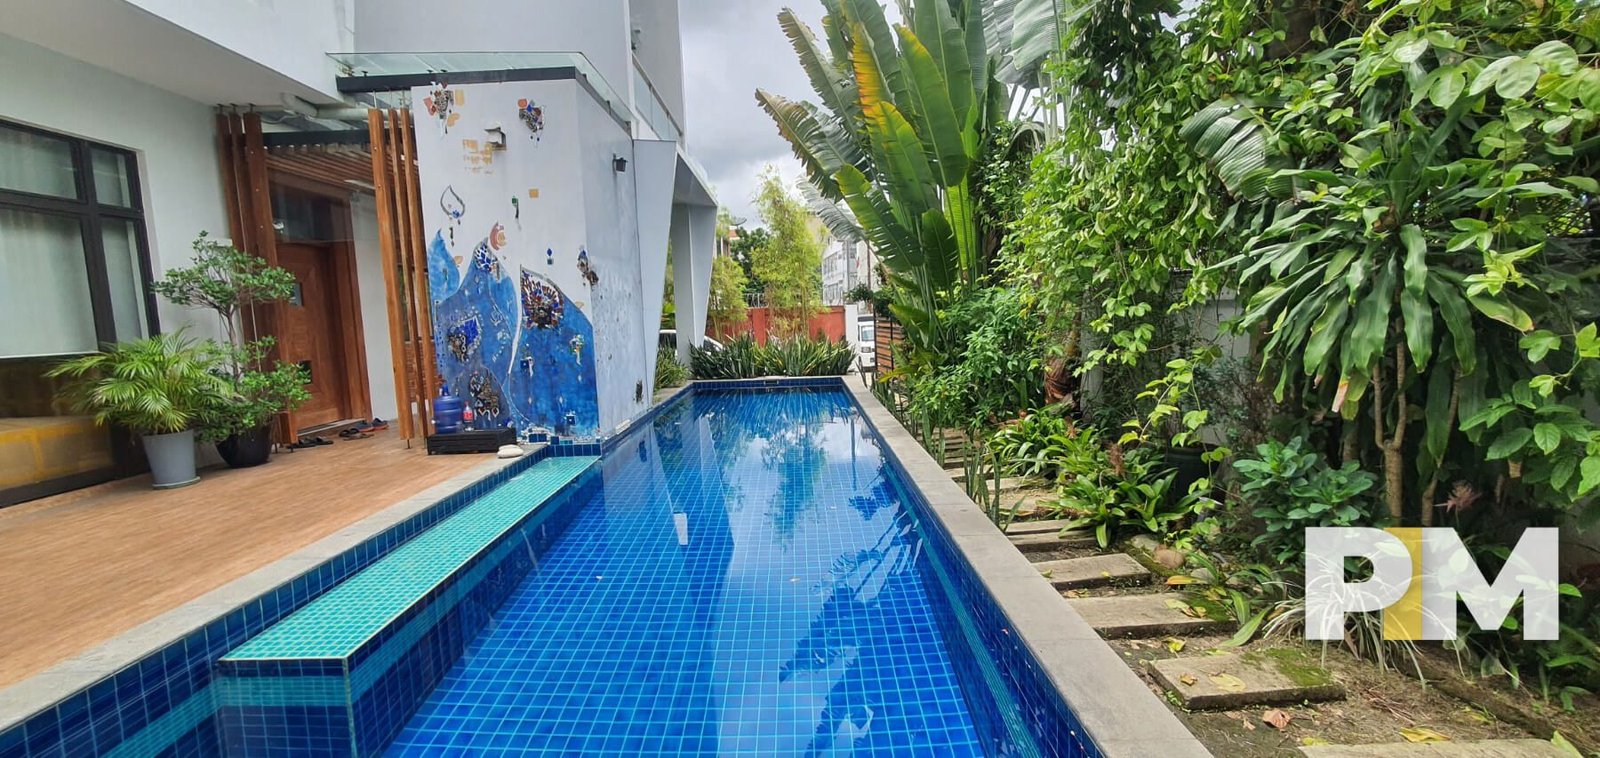 Pool view - Property in Myanmar